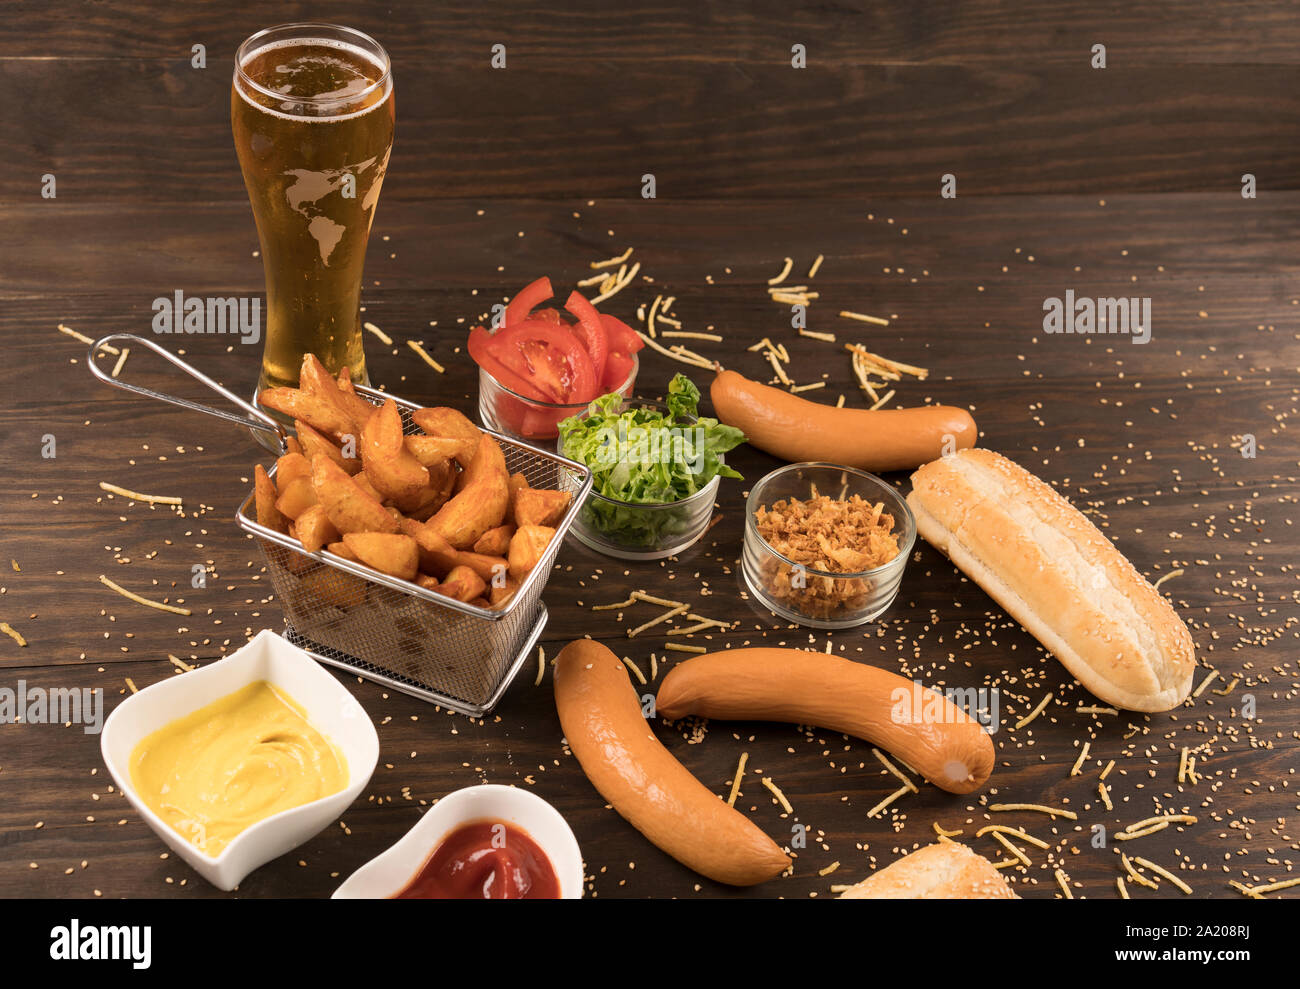 Salchichas con diversos condimentos en madera bord con cerveza fría Foto de stock